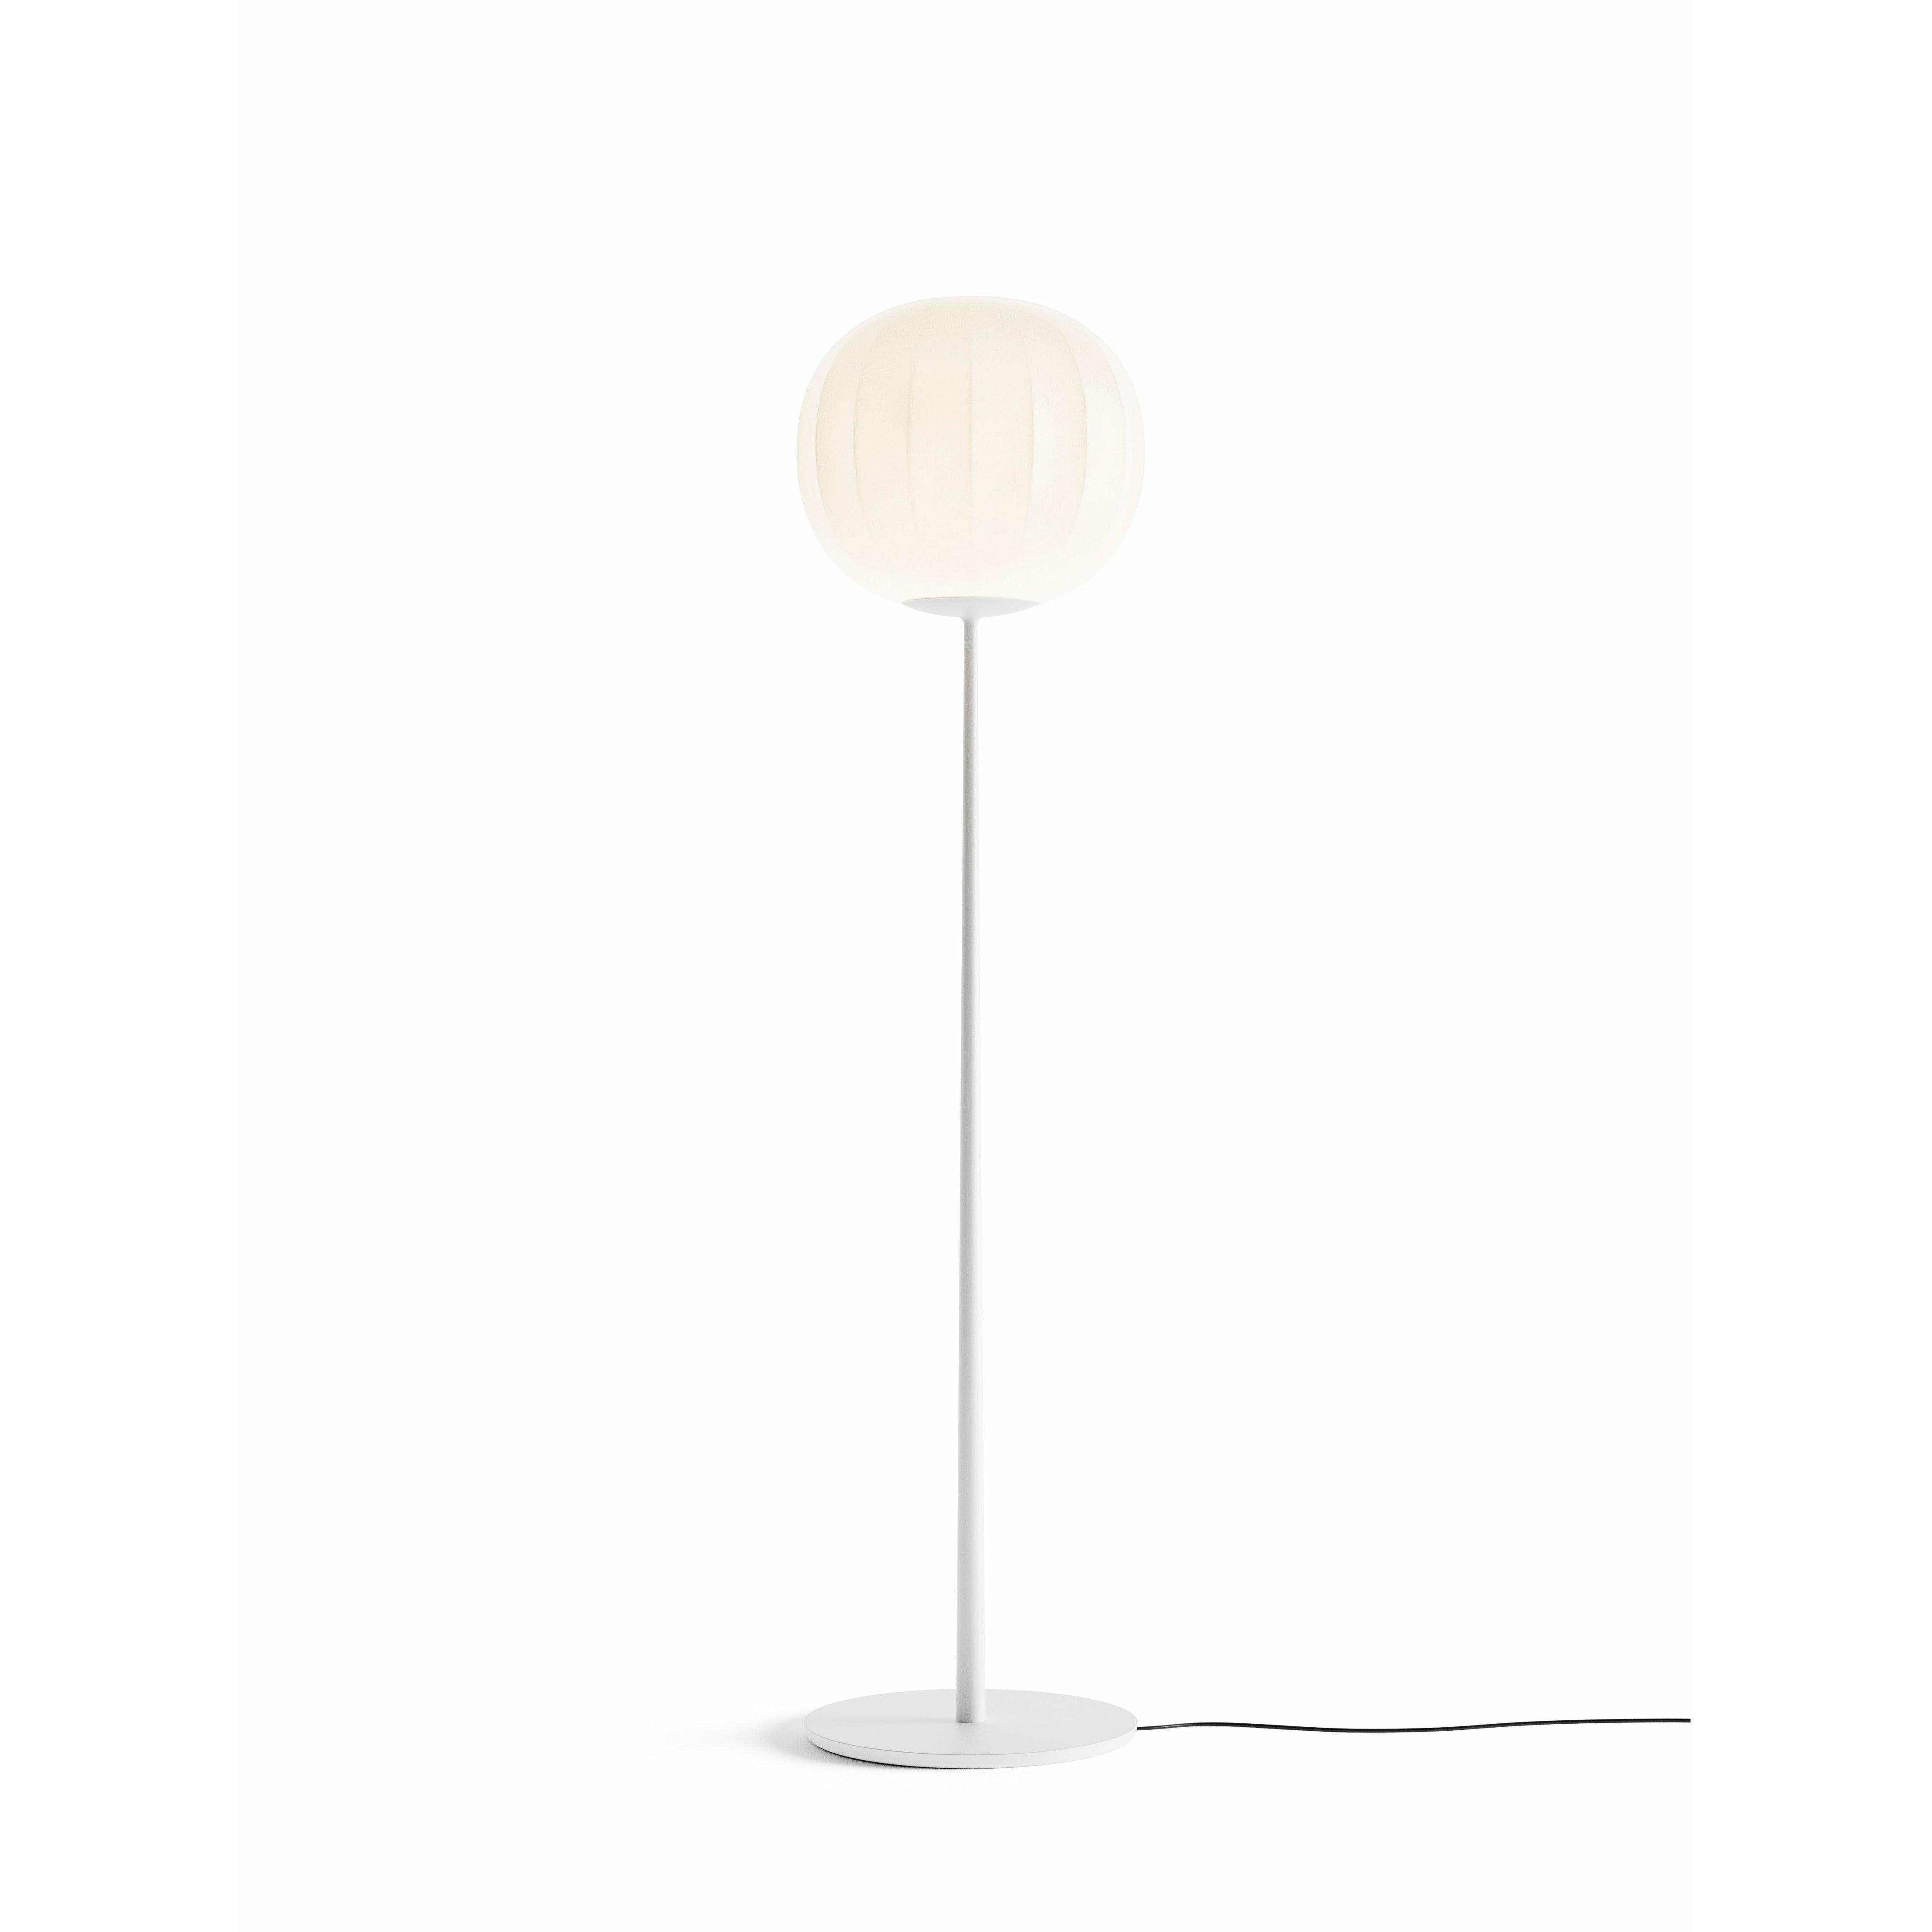 Luceplan - Lita Floor Lamp - 1D920T420502 + 1D920/400002 | Montreal Lighting & Hardware